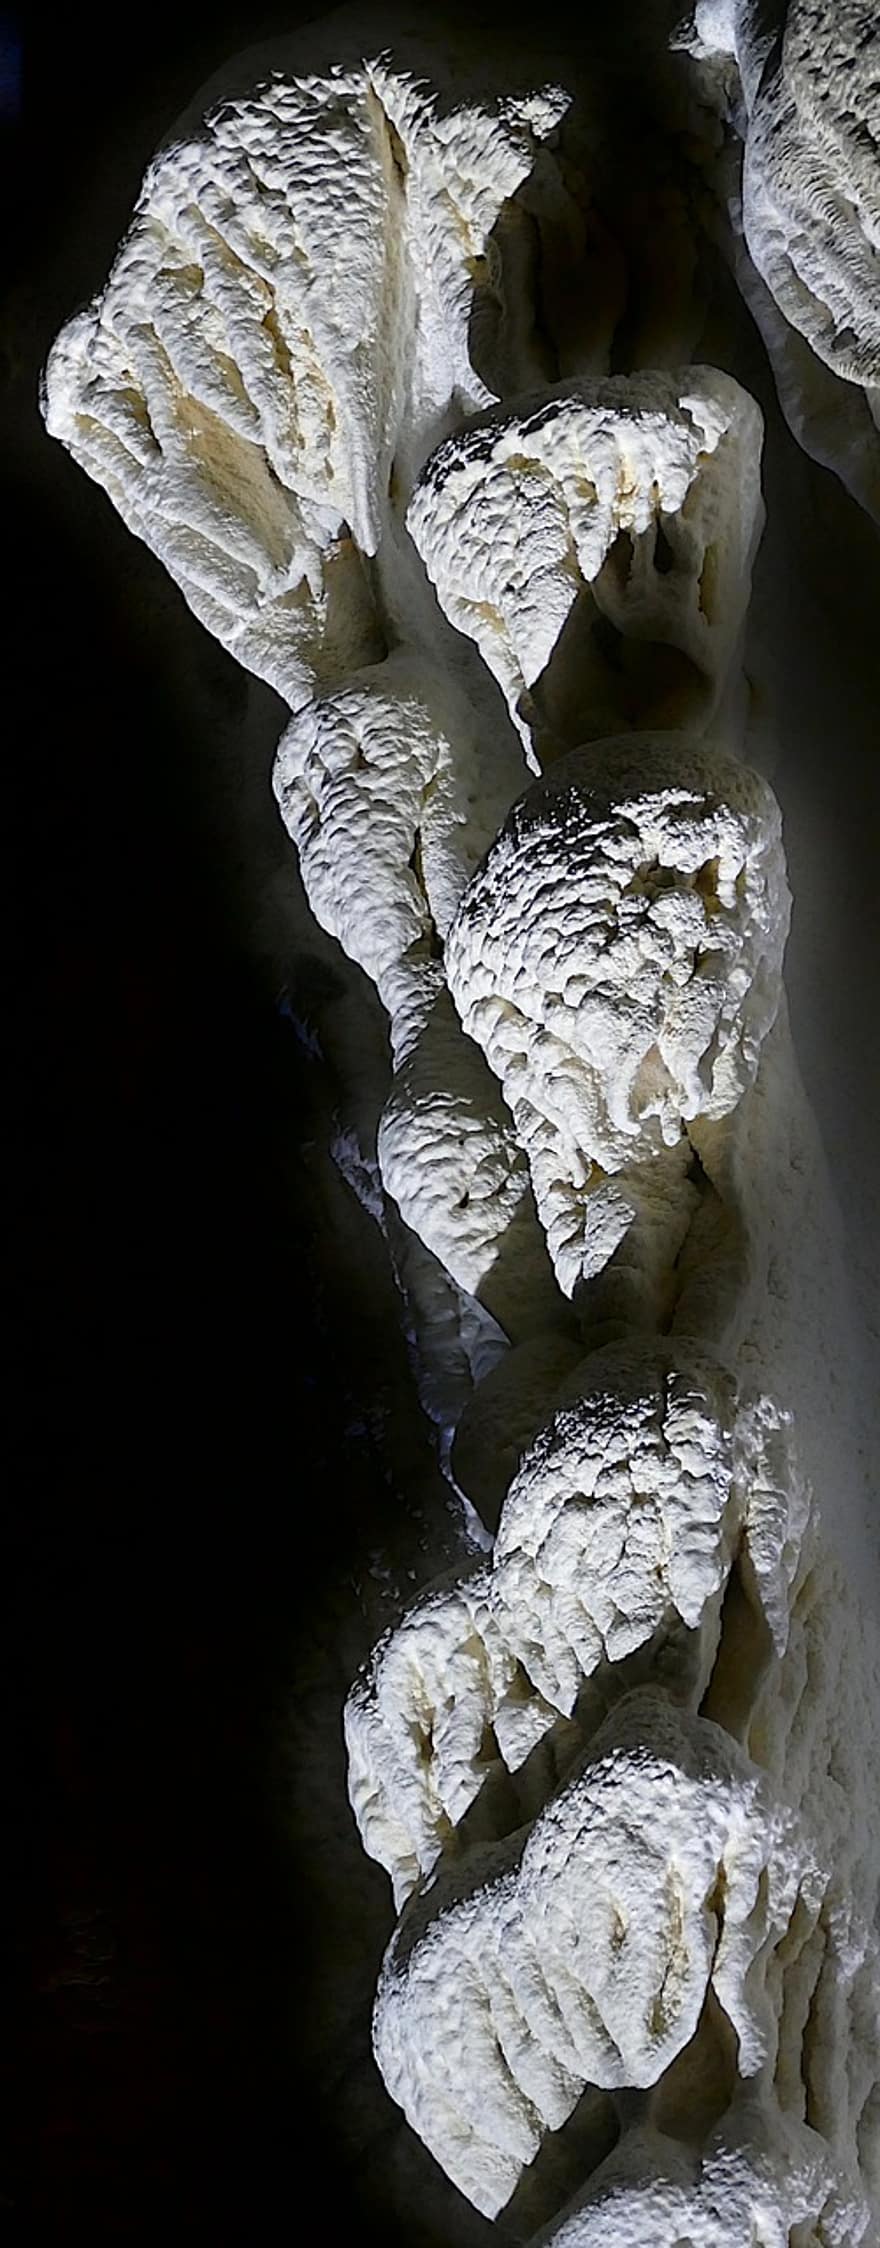 druipsteen, grot, stalactiet grot, Hermannshöhle, Oostenrijk, Neder-Oostenrijk, Kirchberg over de verandering, geologie, donker, onderwereld